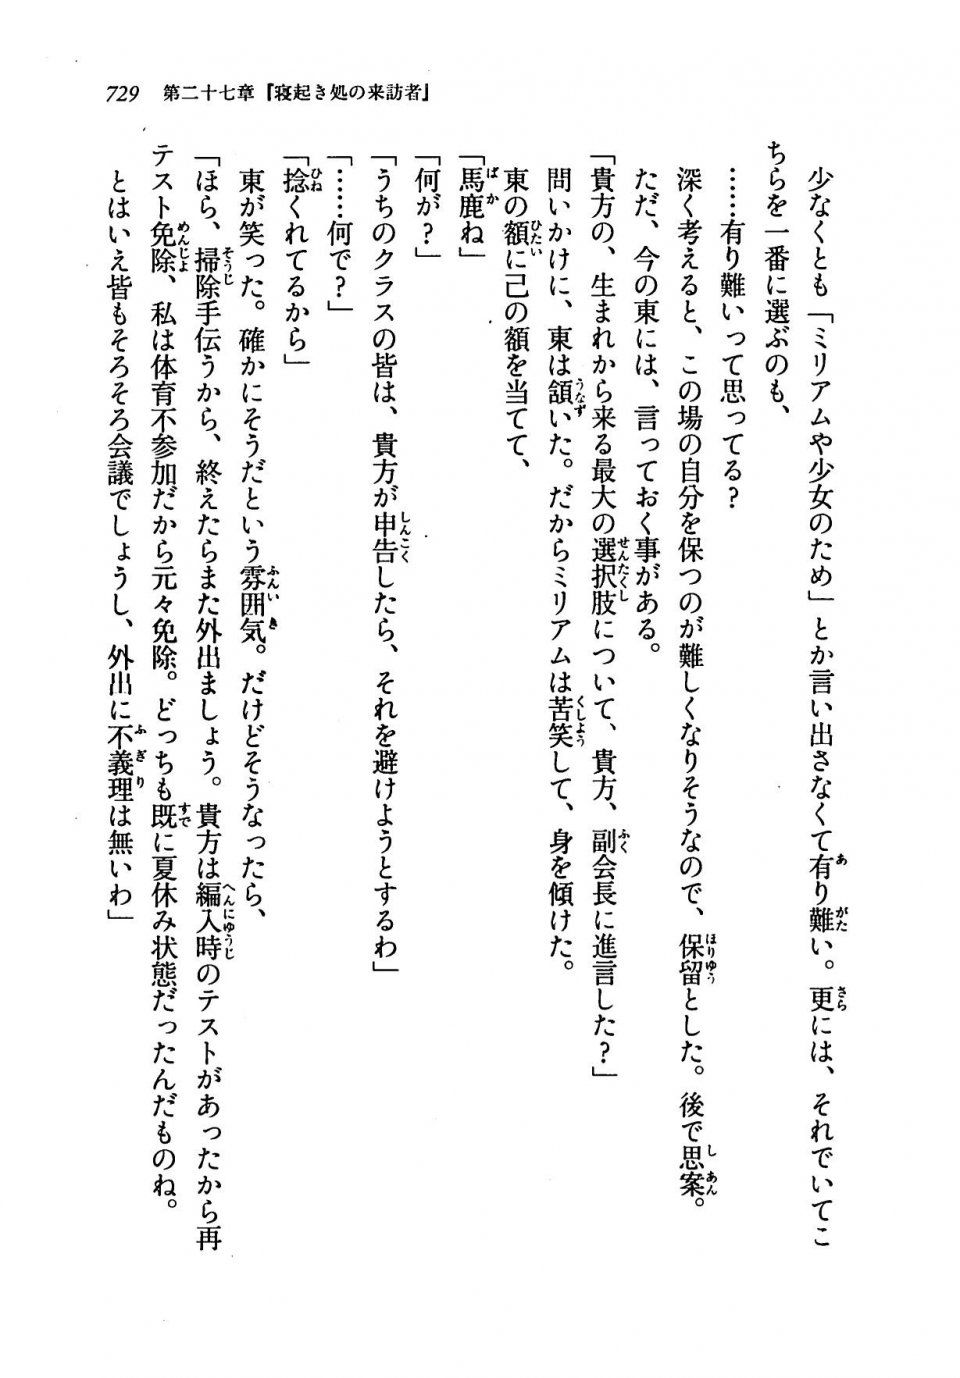 Kyoukai Senjou no Horizon LN Vol 19(8A) - Photo #729